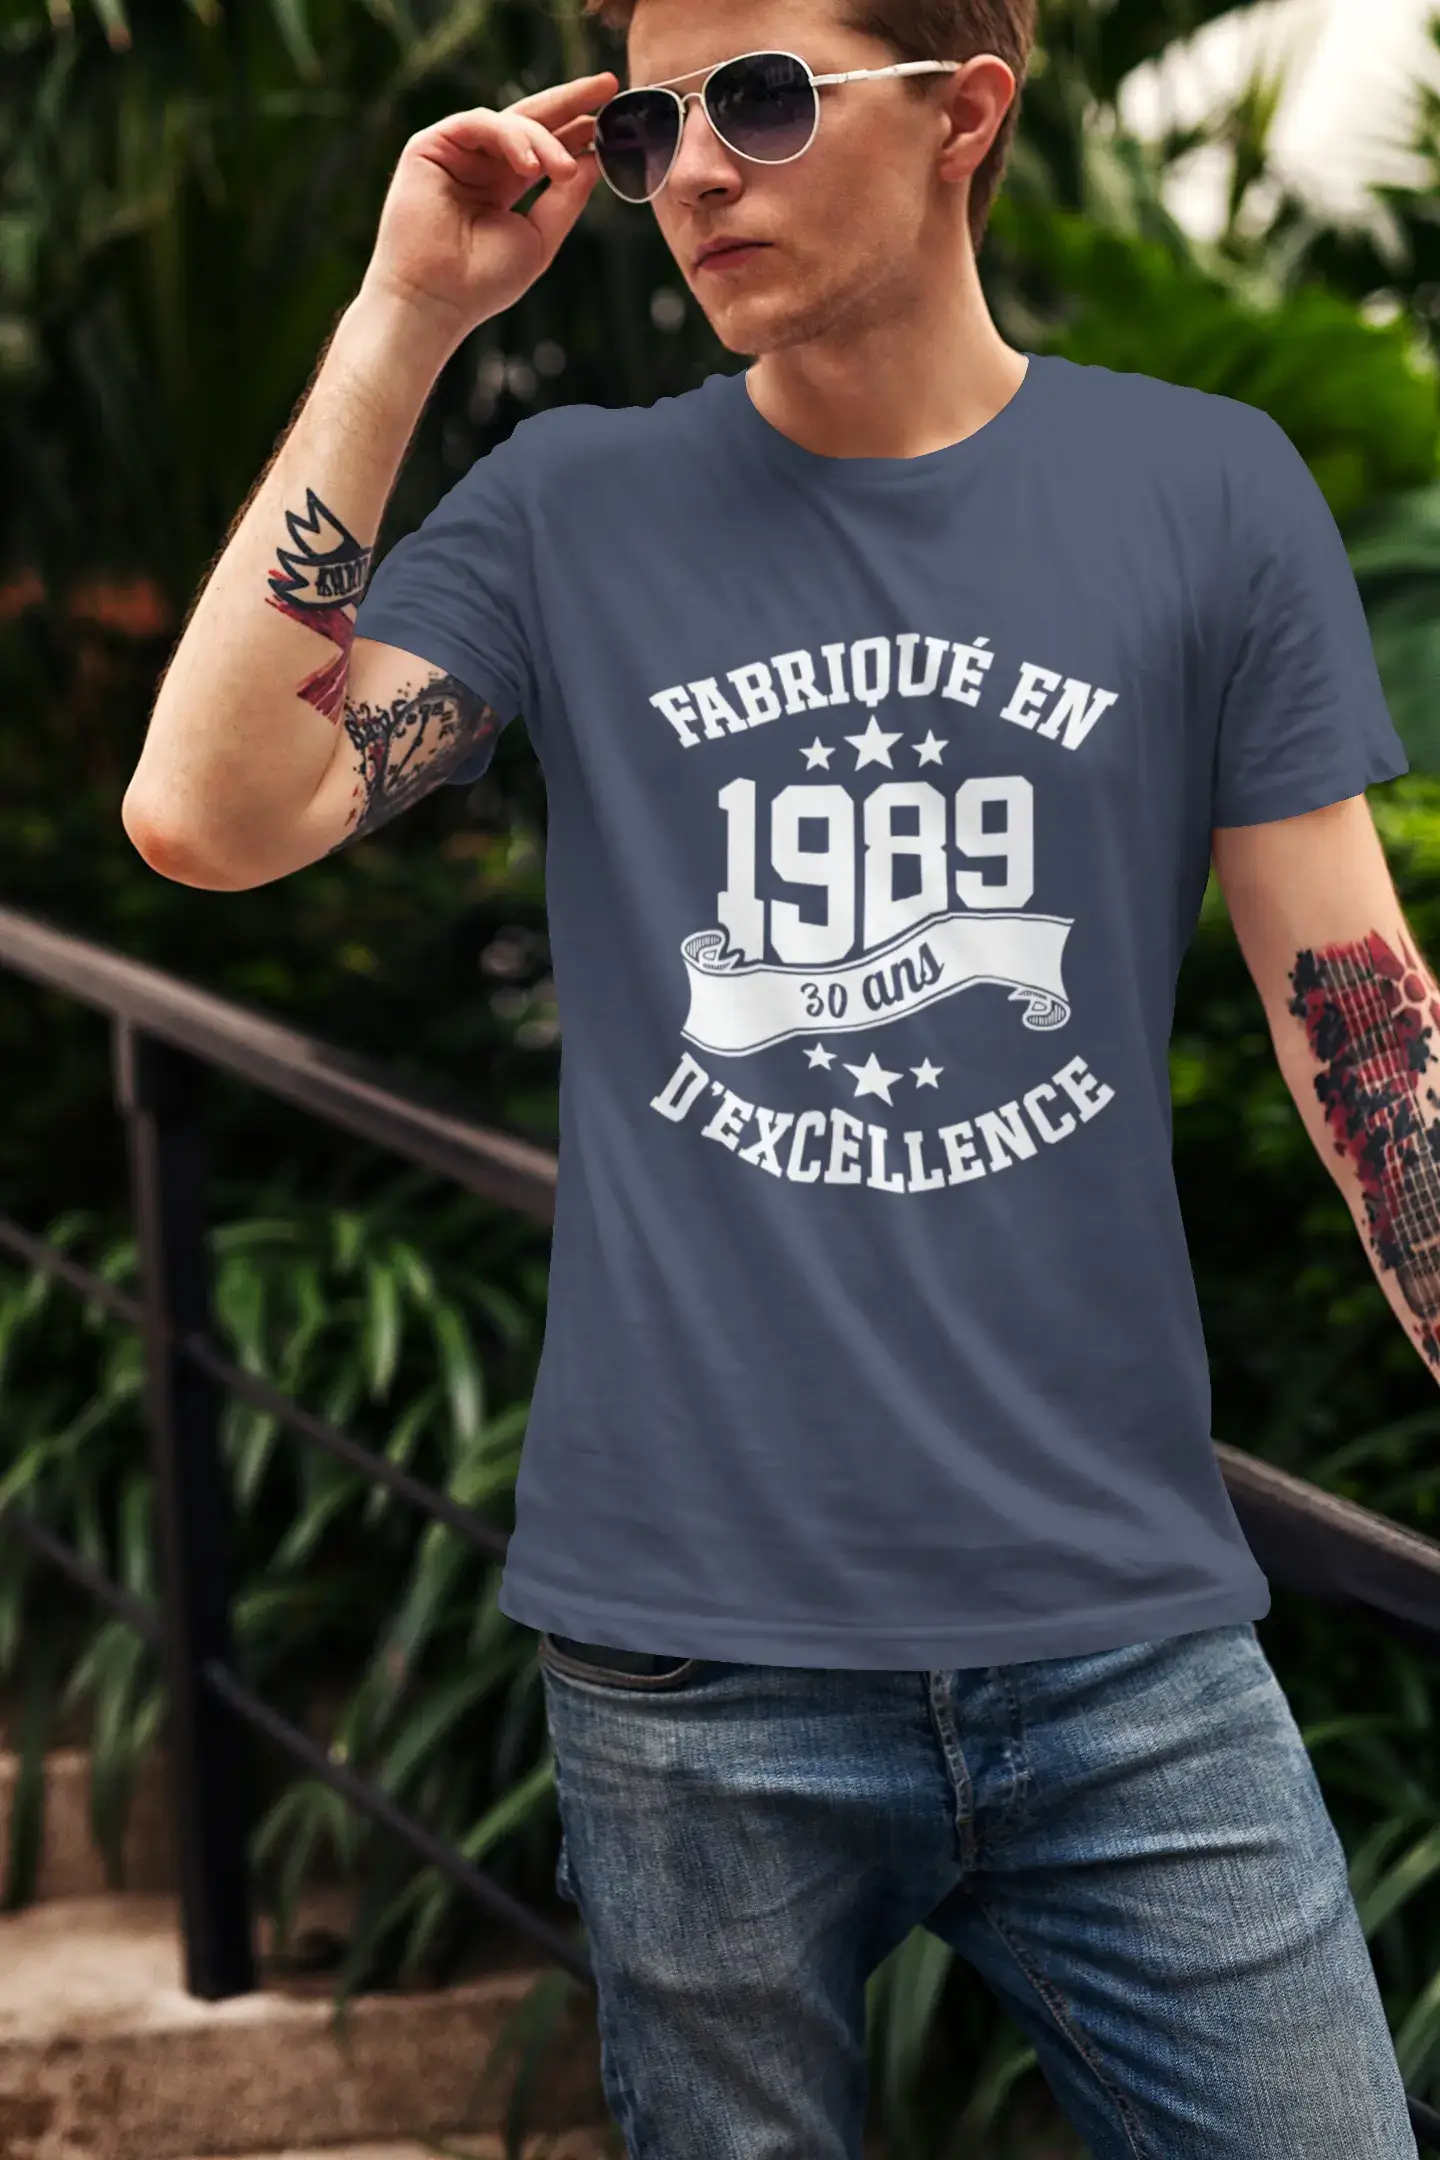 ULTRABASIC – Hergestellt im Jahr 1989, 30 Jahre alt. Ursprüngliches Unisex-T-Shirt aus Denim